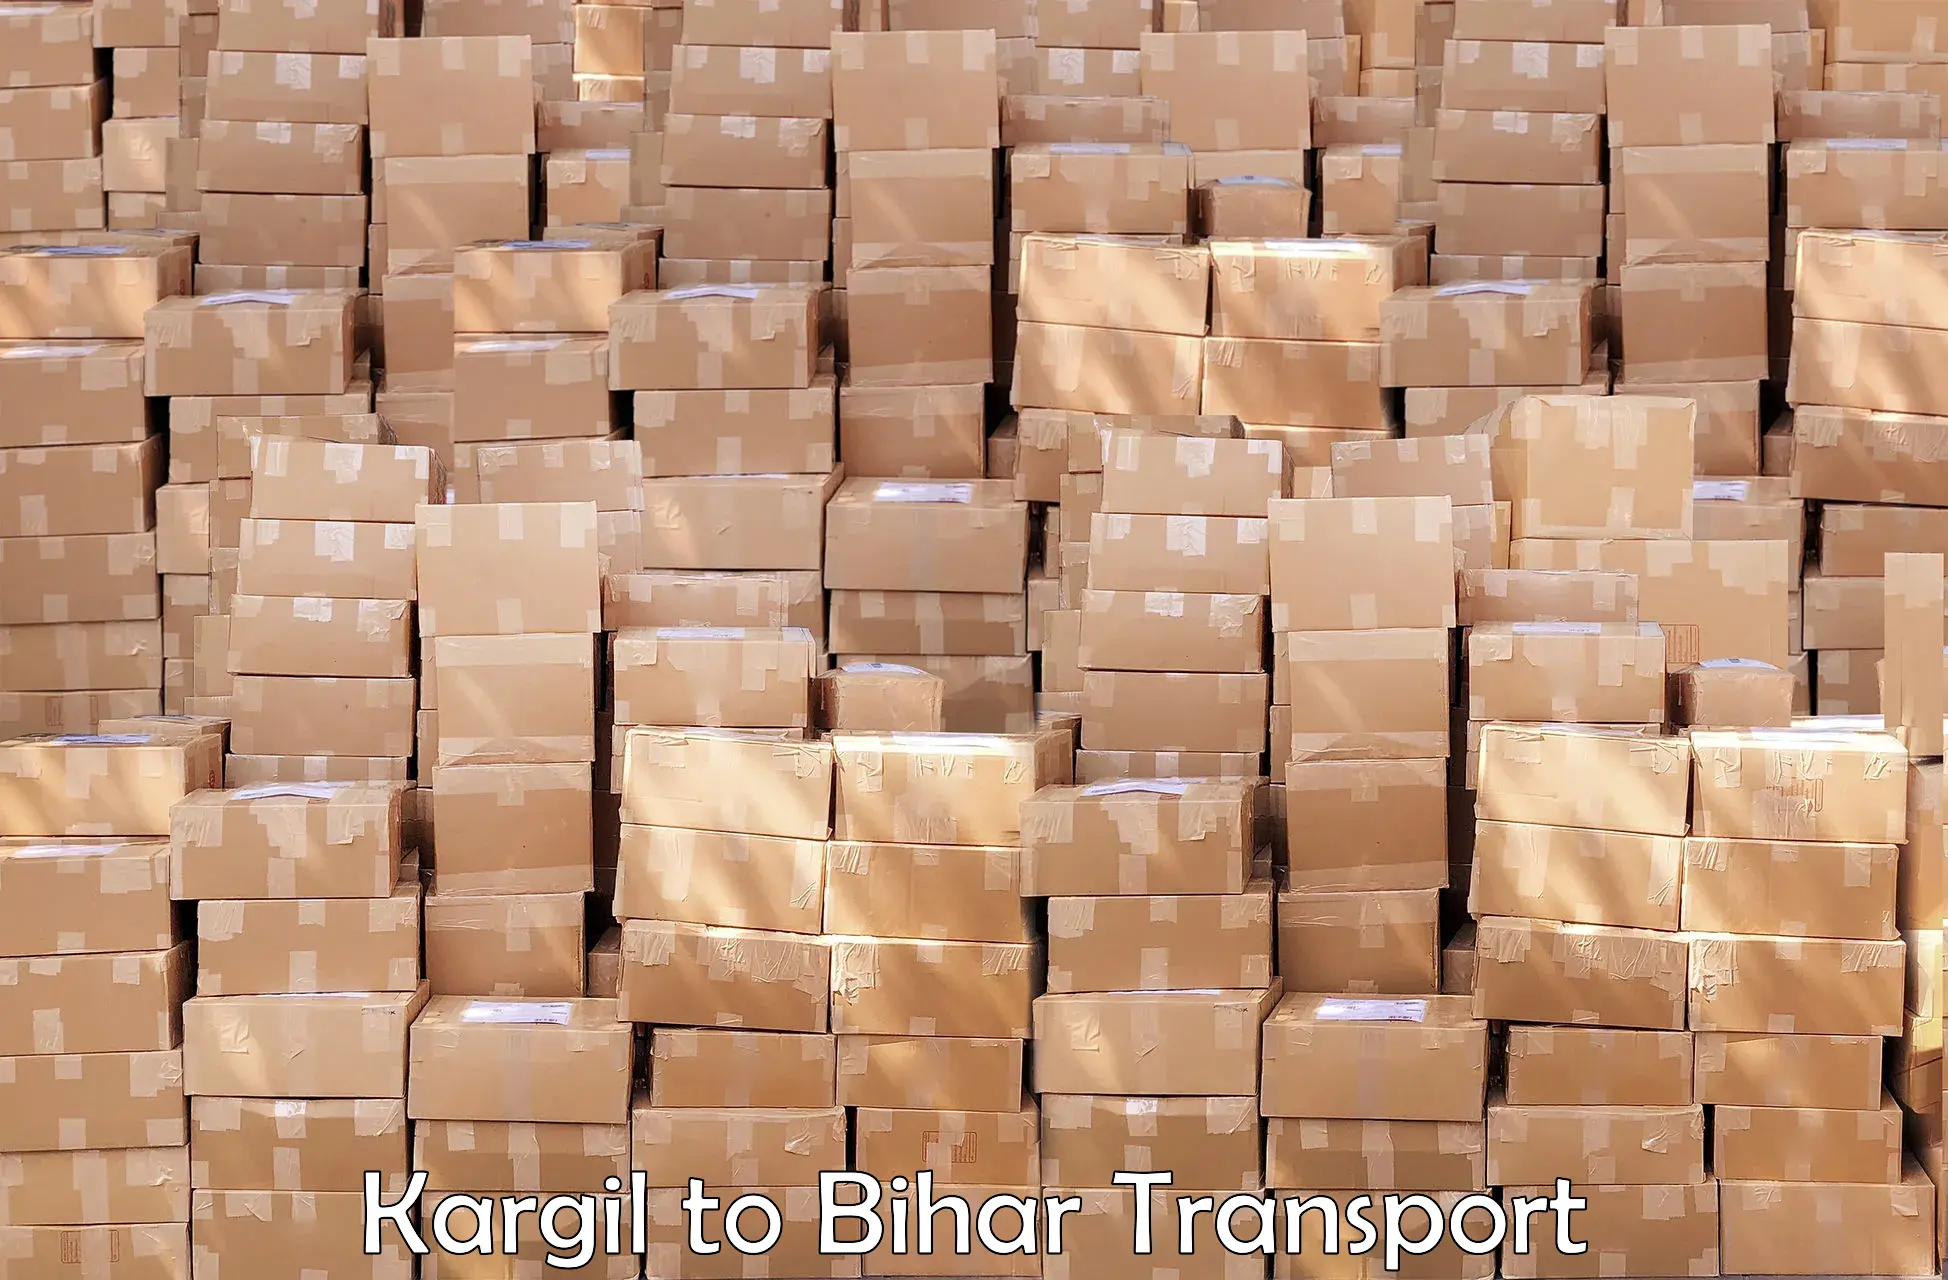 Delivery service Kargil to Dumraon